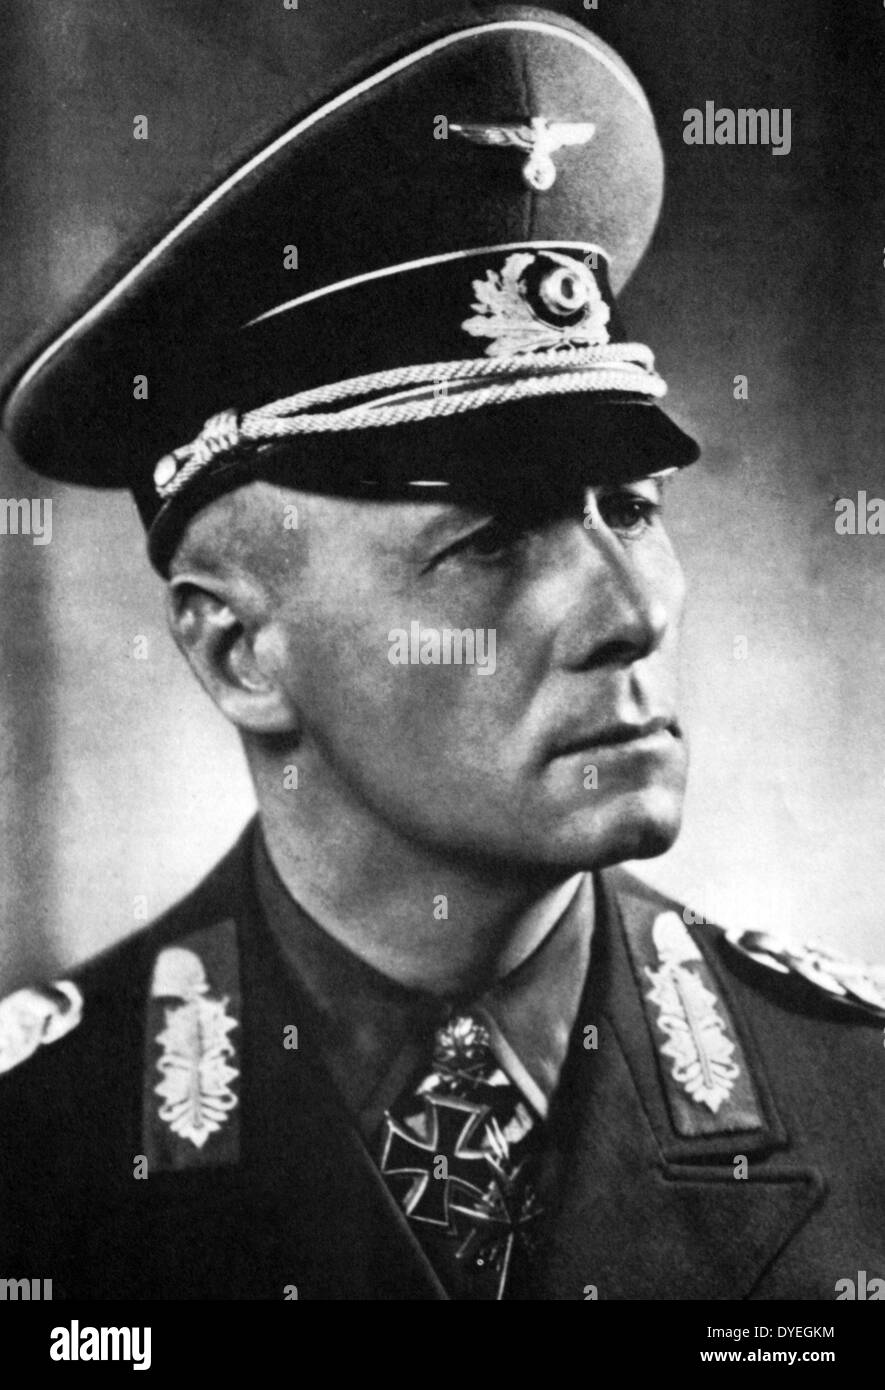 Johanness General Eugen Rommel (1891-1944), popularmente conocido como el zorro del desierto fue un Mariscal de Campo alemán de la Primera Guerra Mundial 11. Se ganó el respeto tanto de sus propias tropas y los enemigos luchó. Foto de stock